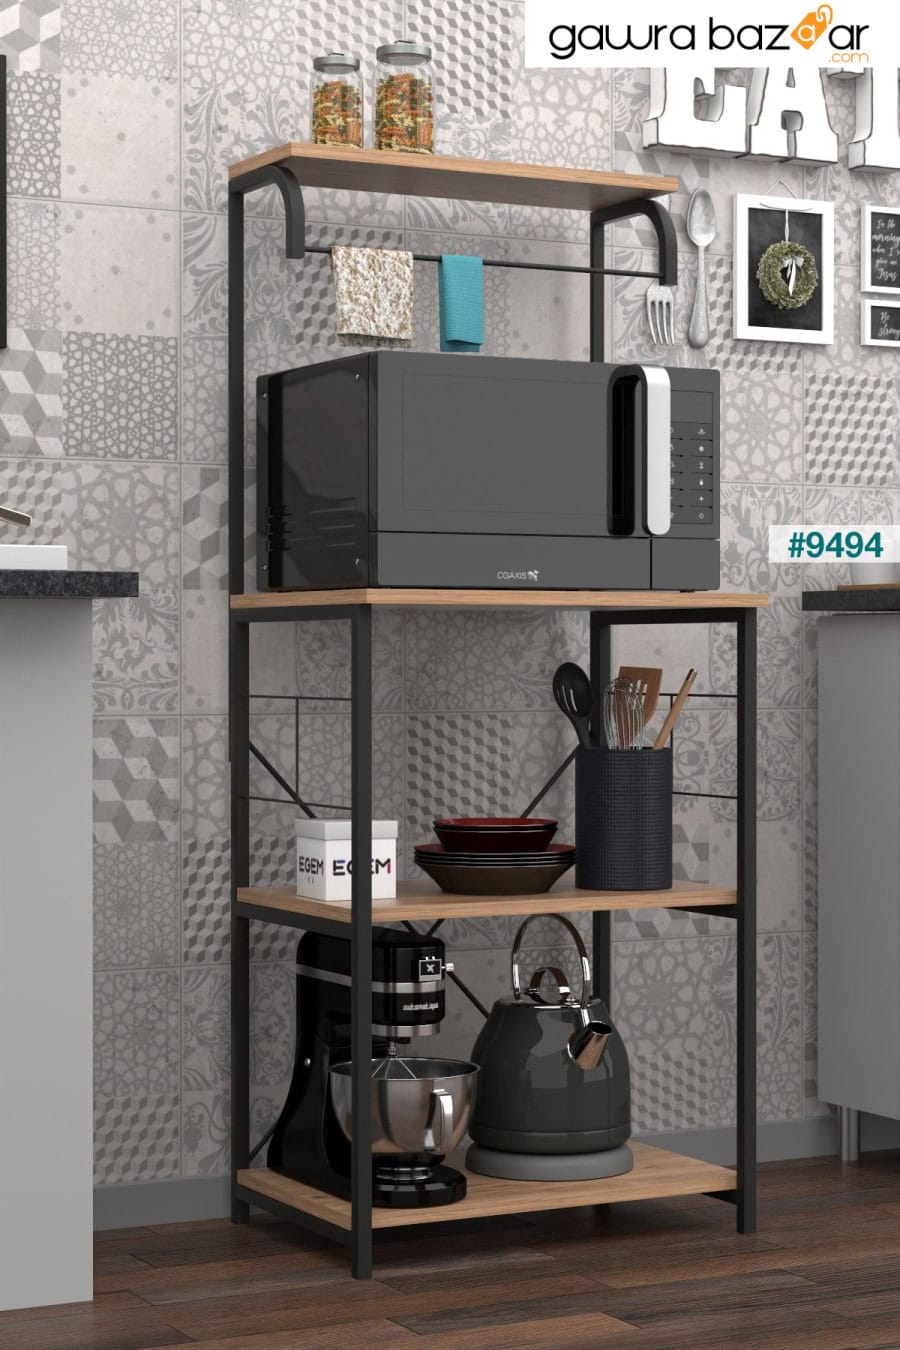 خزانة مطبخ متعددة الأغراض، خزانة فرن بانغو، فرن ميكروويف، خزانة فرن صغيرة، خزانة مطبخ EGEMEV 2